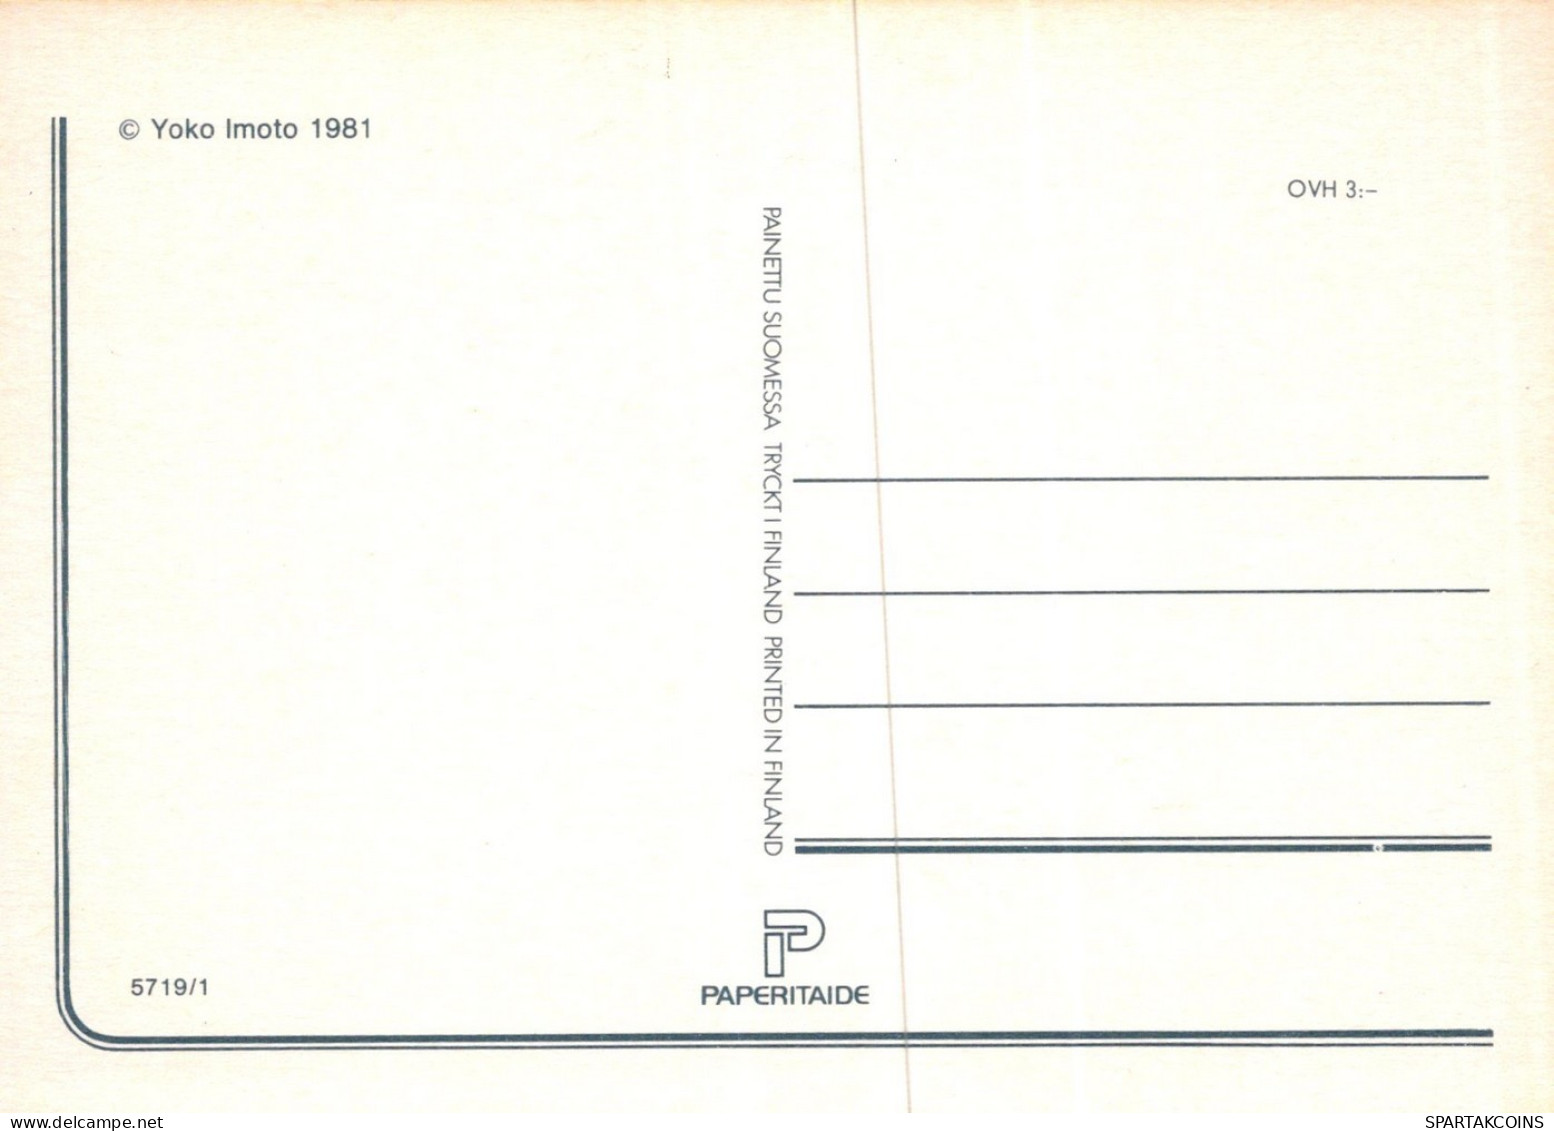 KATZE MIEZEKATZE Tier Vintage Ansichtskarte Postkarte CPSM Unposted #PAM231.DE - Chats